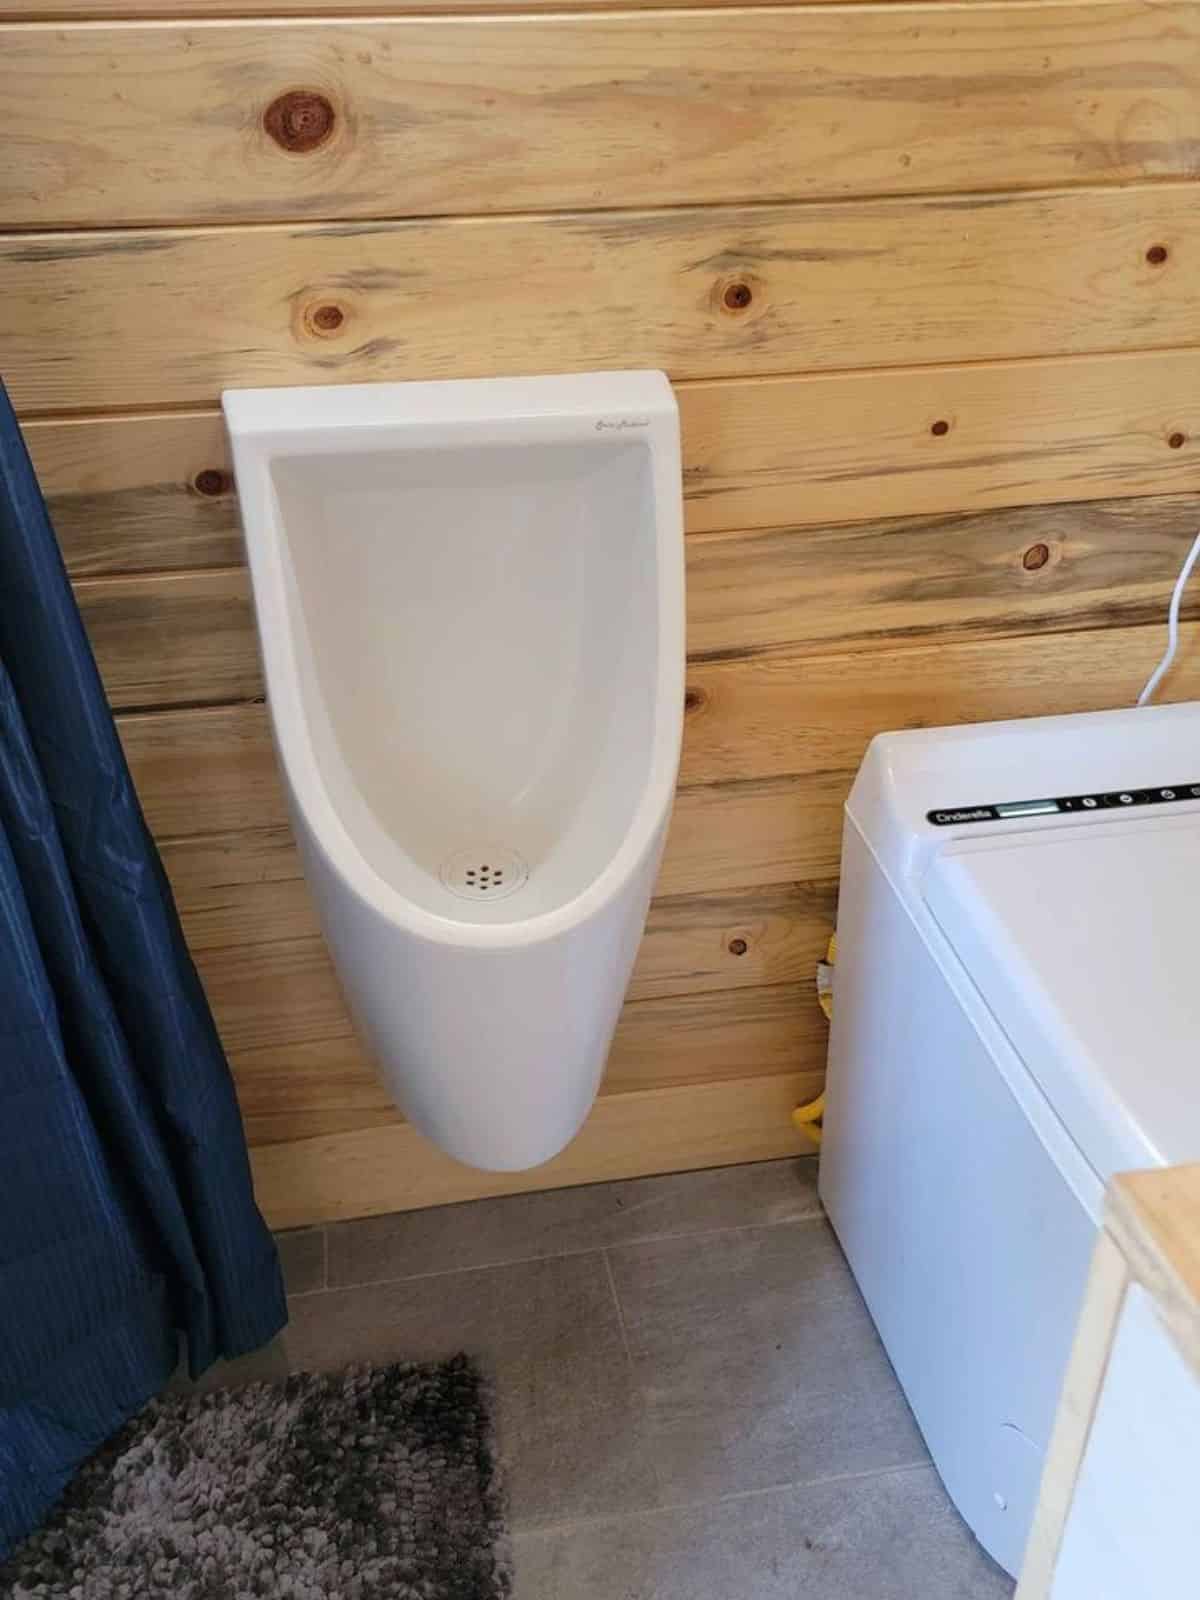 waterless urinal installed in bathroom